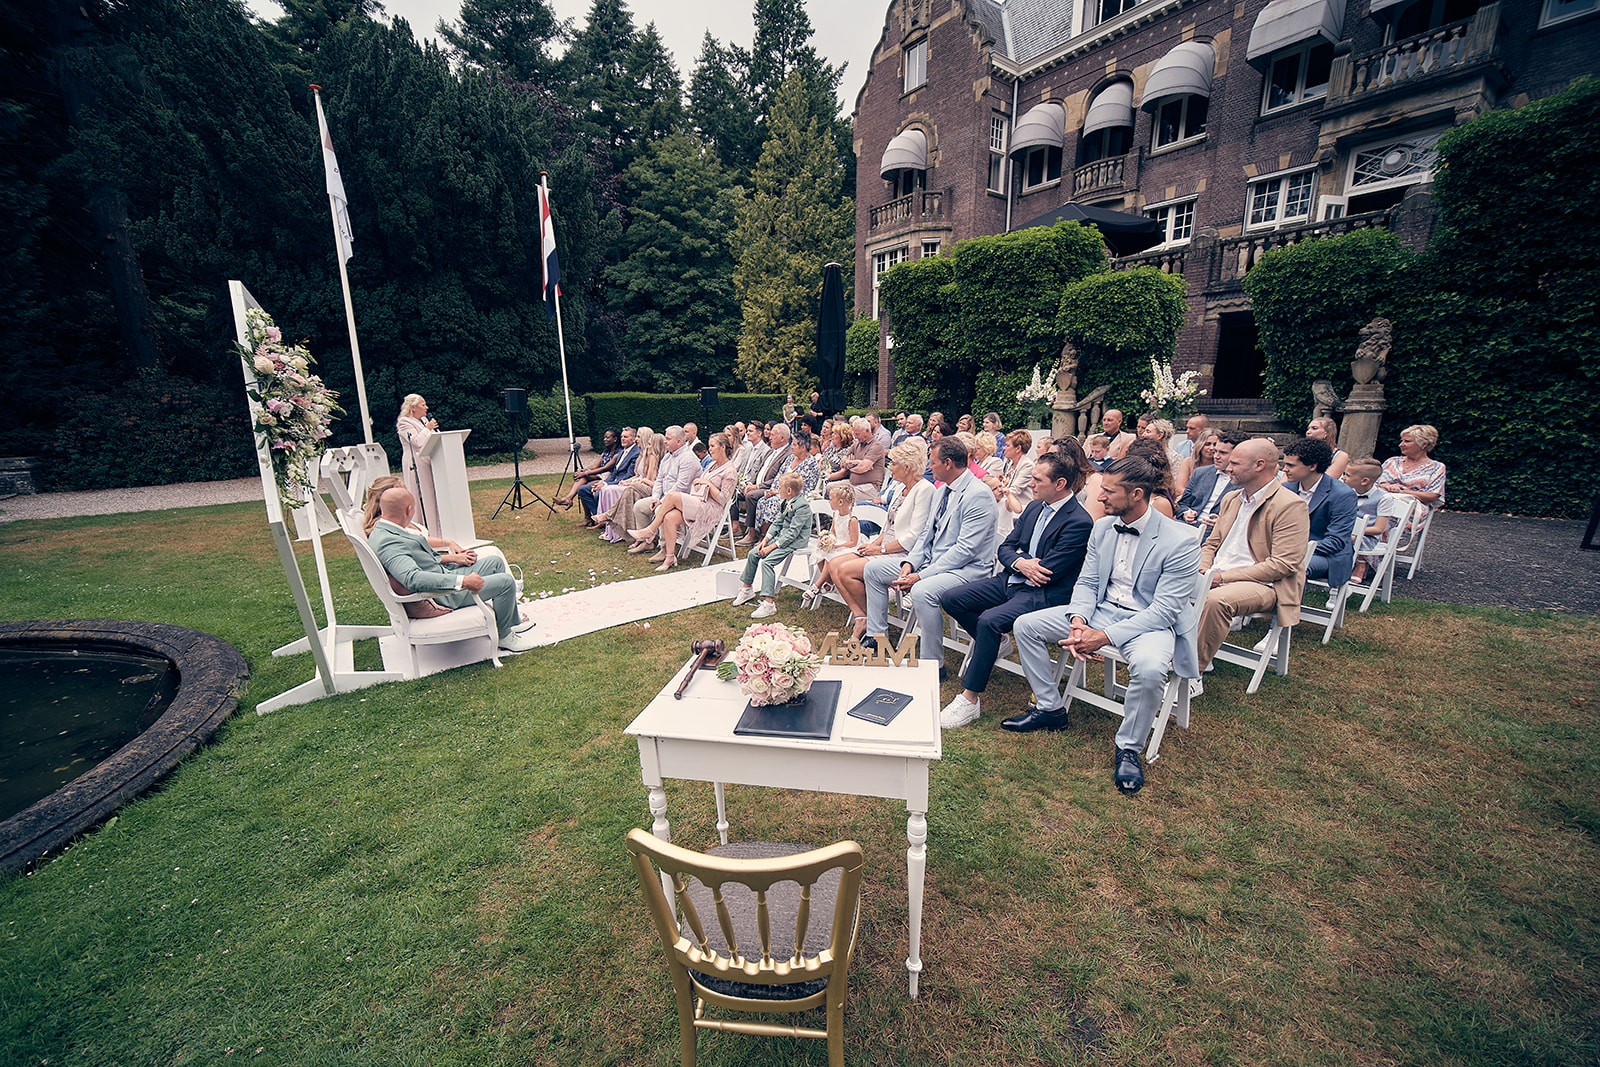 Trouwfotograaf Kasteel Hooge Vuursche in Baarn - De bruidsfotografie van Dennis en Kim - ceremonie